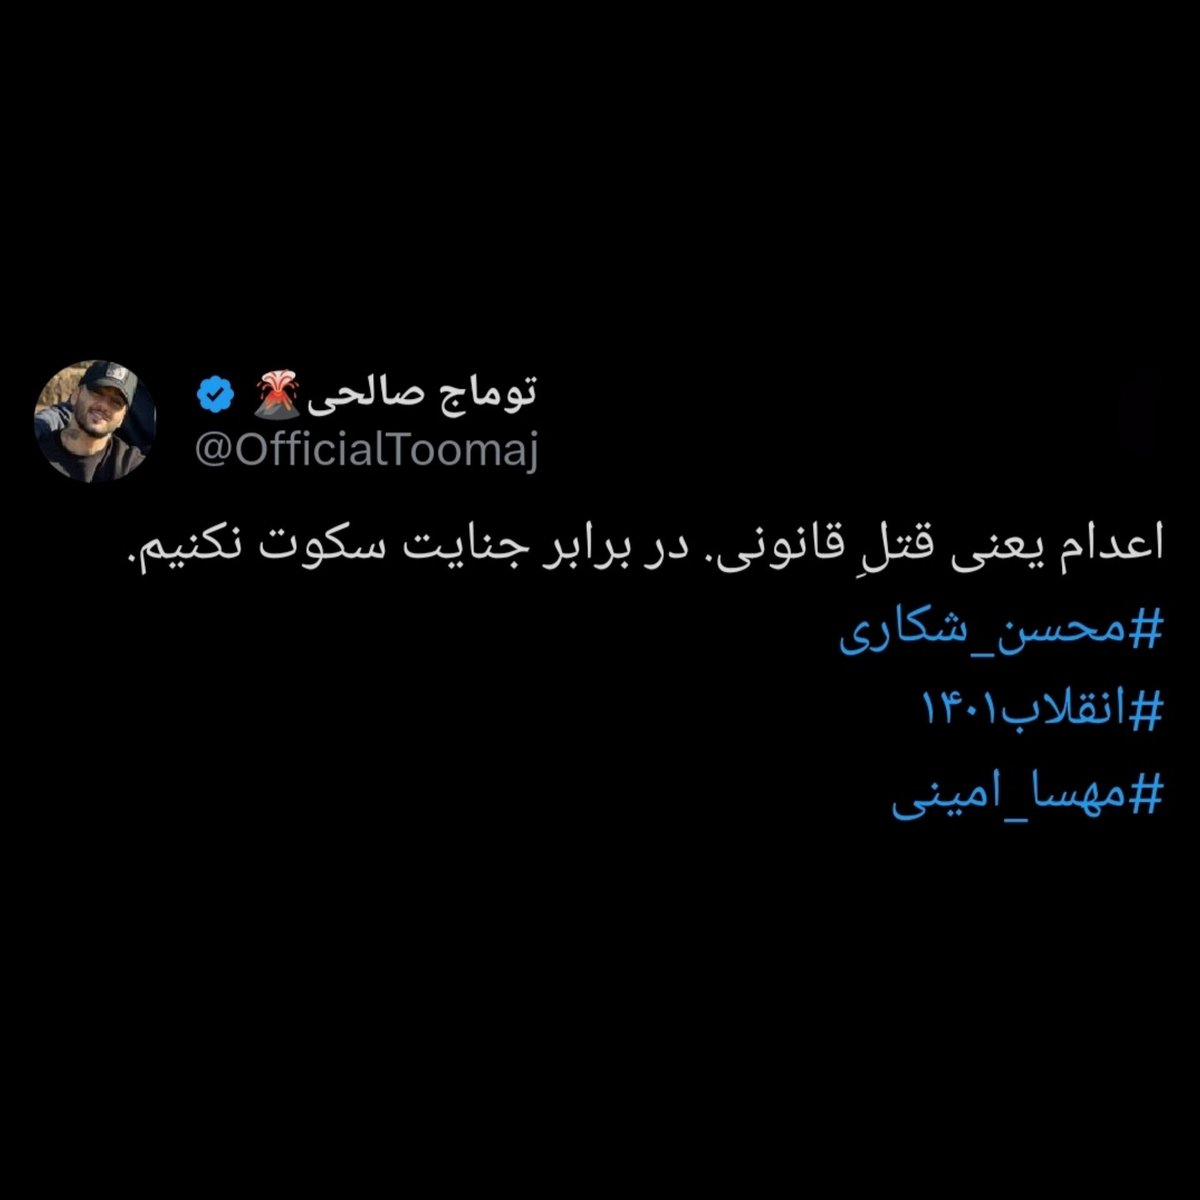 #توماج_صالحی کسی که درست وسط انقلابمون برای محسن شکاری گفت: «اعدام یعنی قتلِ قانونی. در برابر جنایت سکوت نکنیم.»
حالا خودش فقط بخاطر 'حرف زدن' به اعدام محکوم شده!
صداش باشیم.
#FreeToomaj